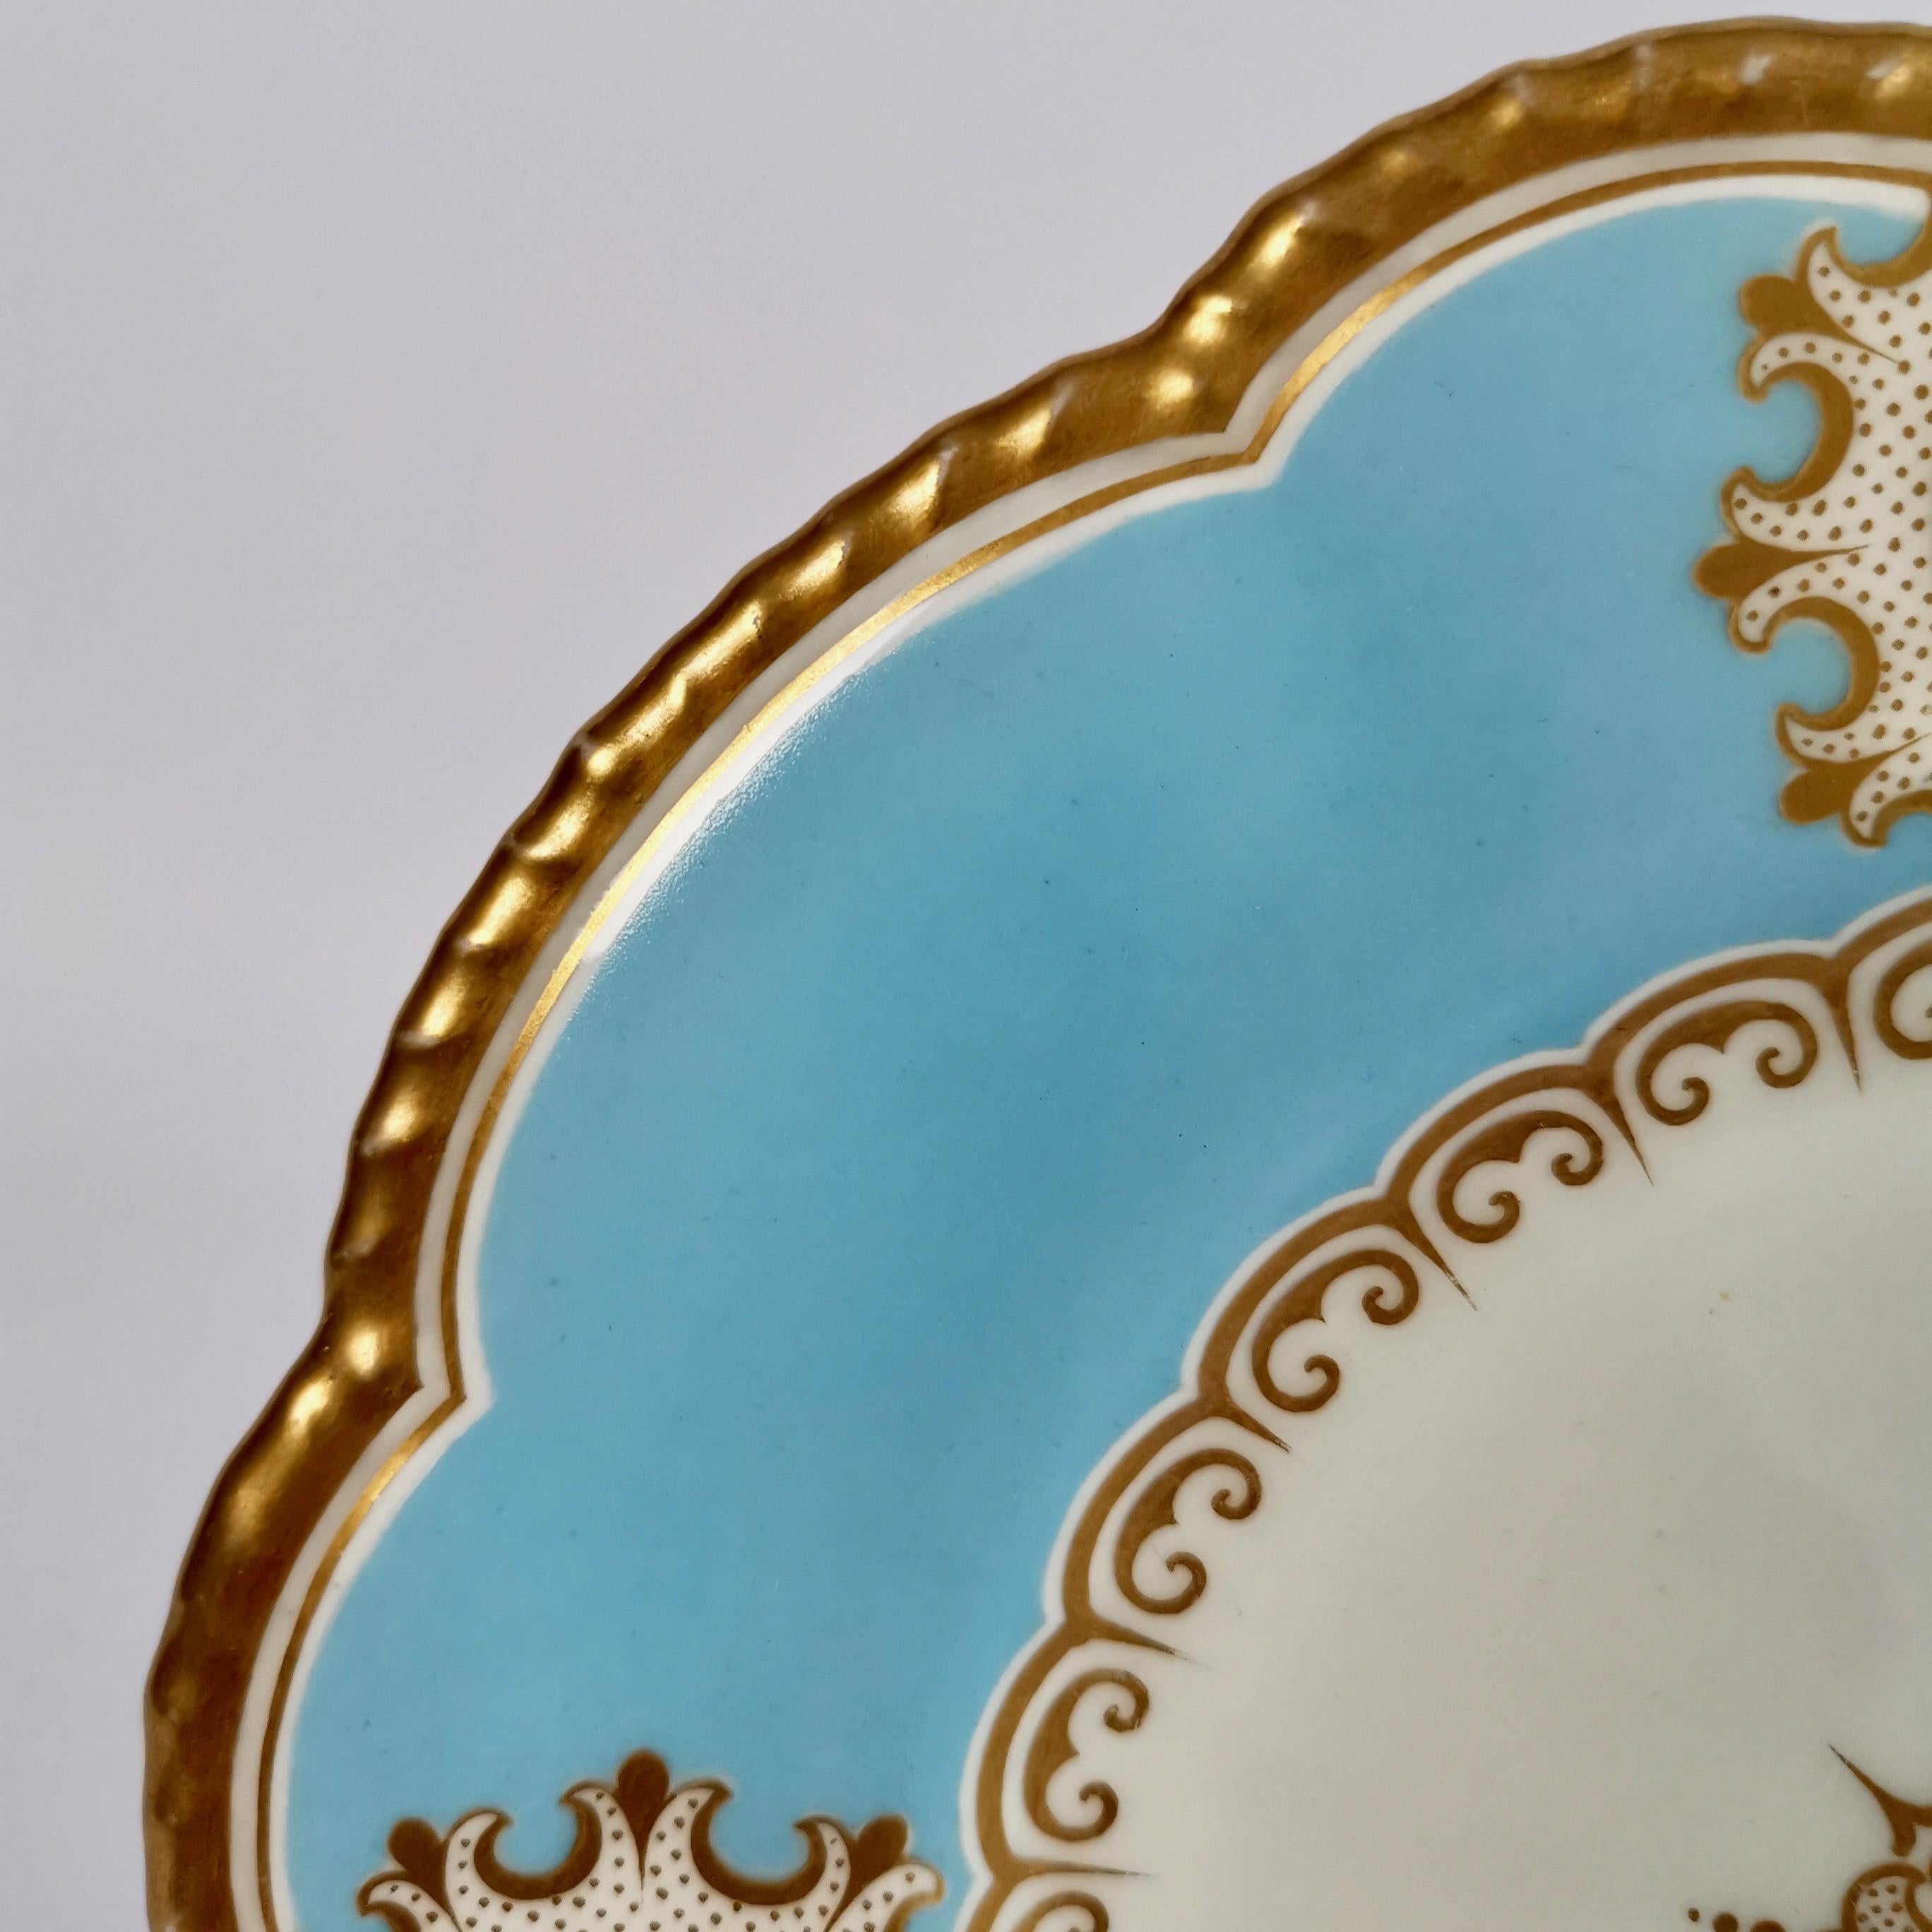 Grainger Worcester Porcelain Plate, Sky Blue with Landscapes, Victorian 1